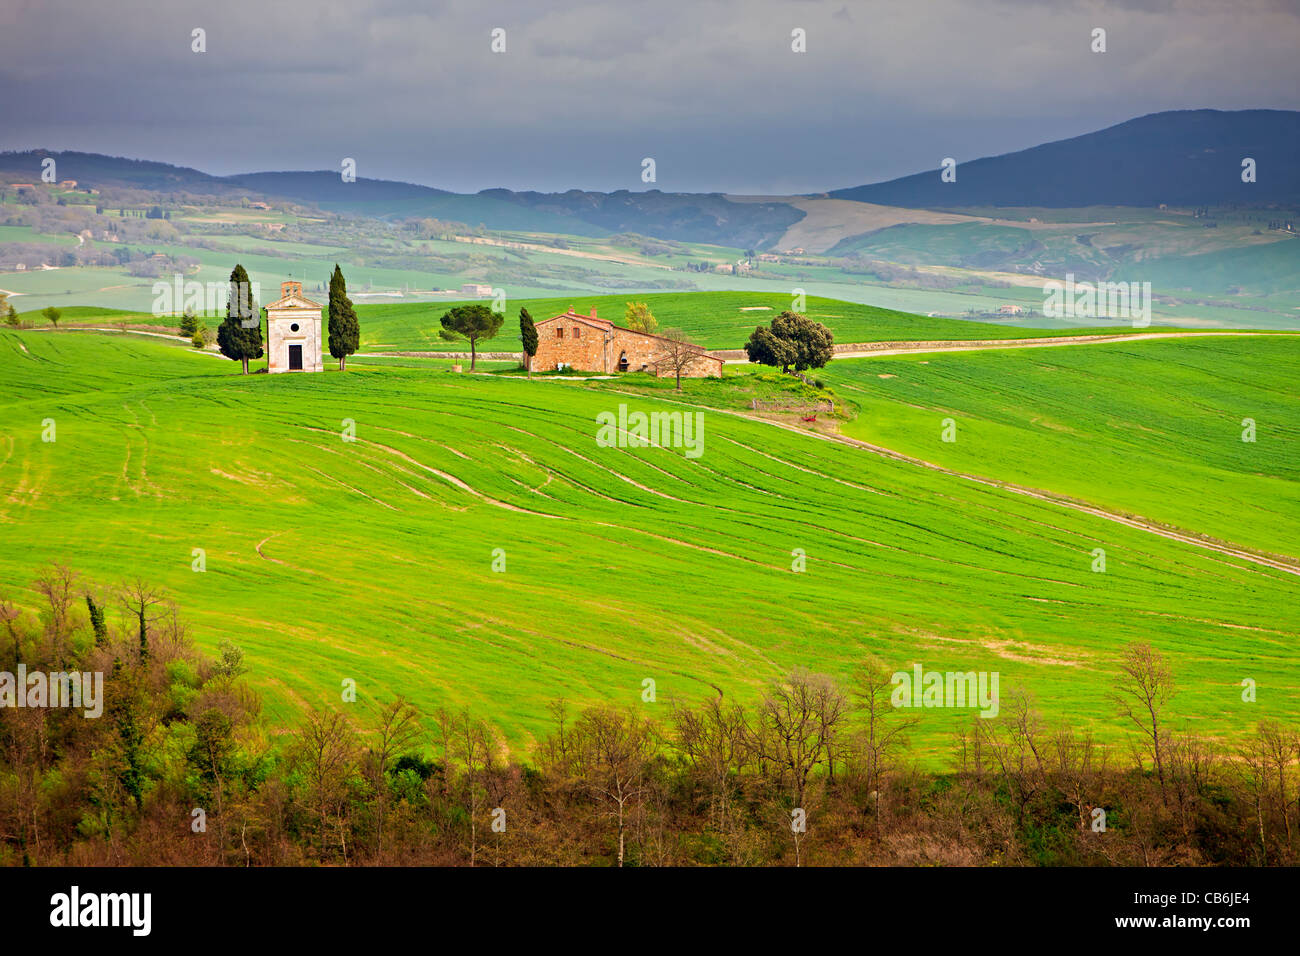 Kirche in die toskanische Landschaft gesetzt in der Nähe von der Stadt Pienza in der Provinz Siena, Toskana, Italien, Europa. Stockfoto